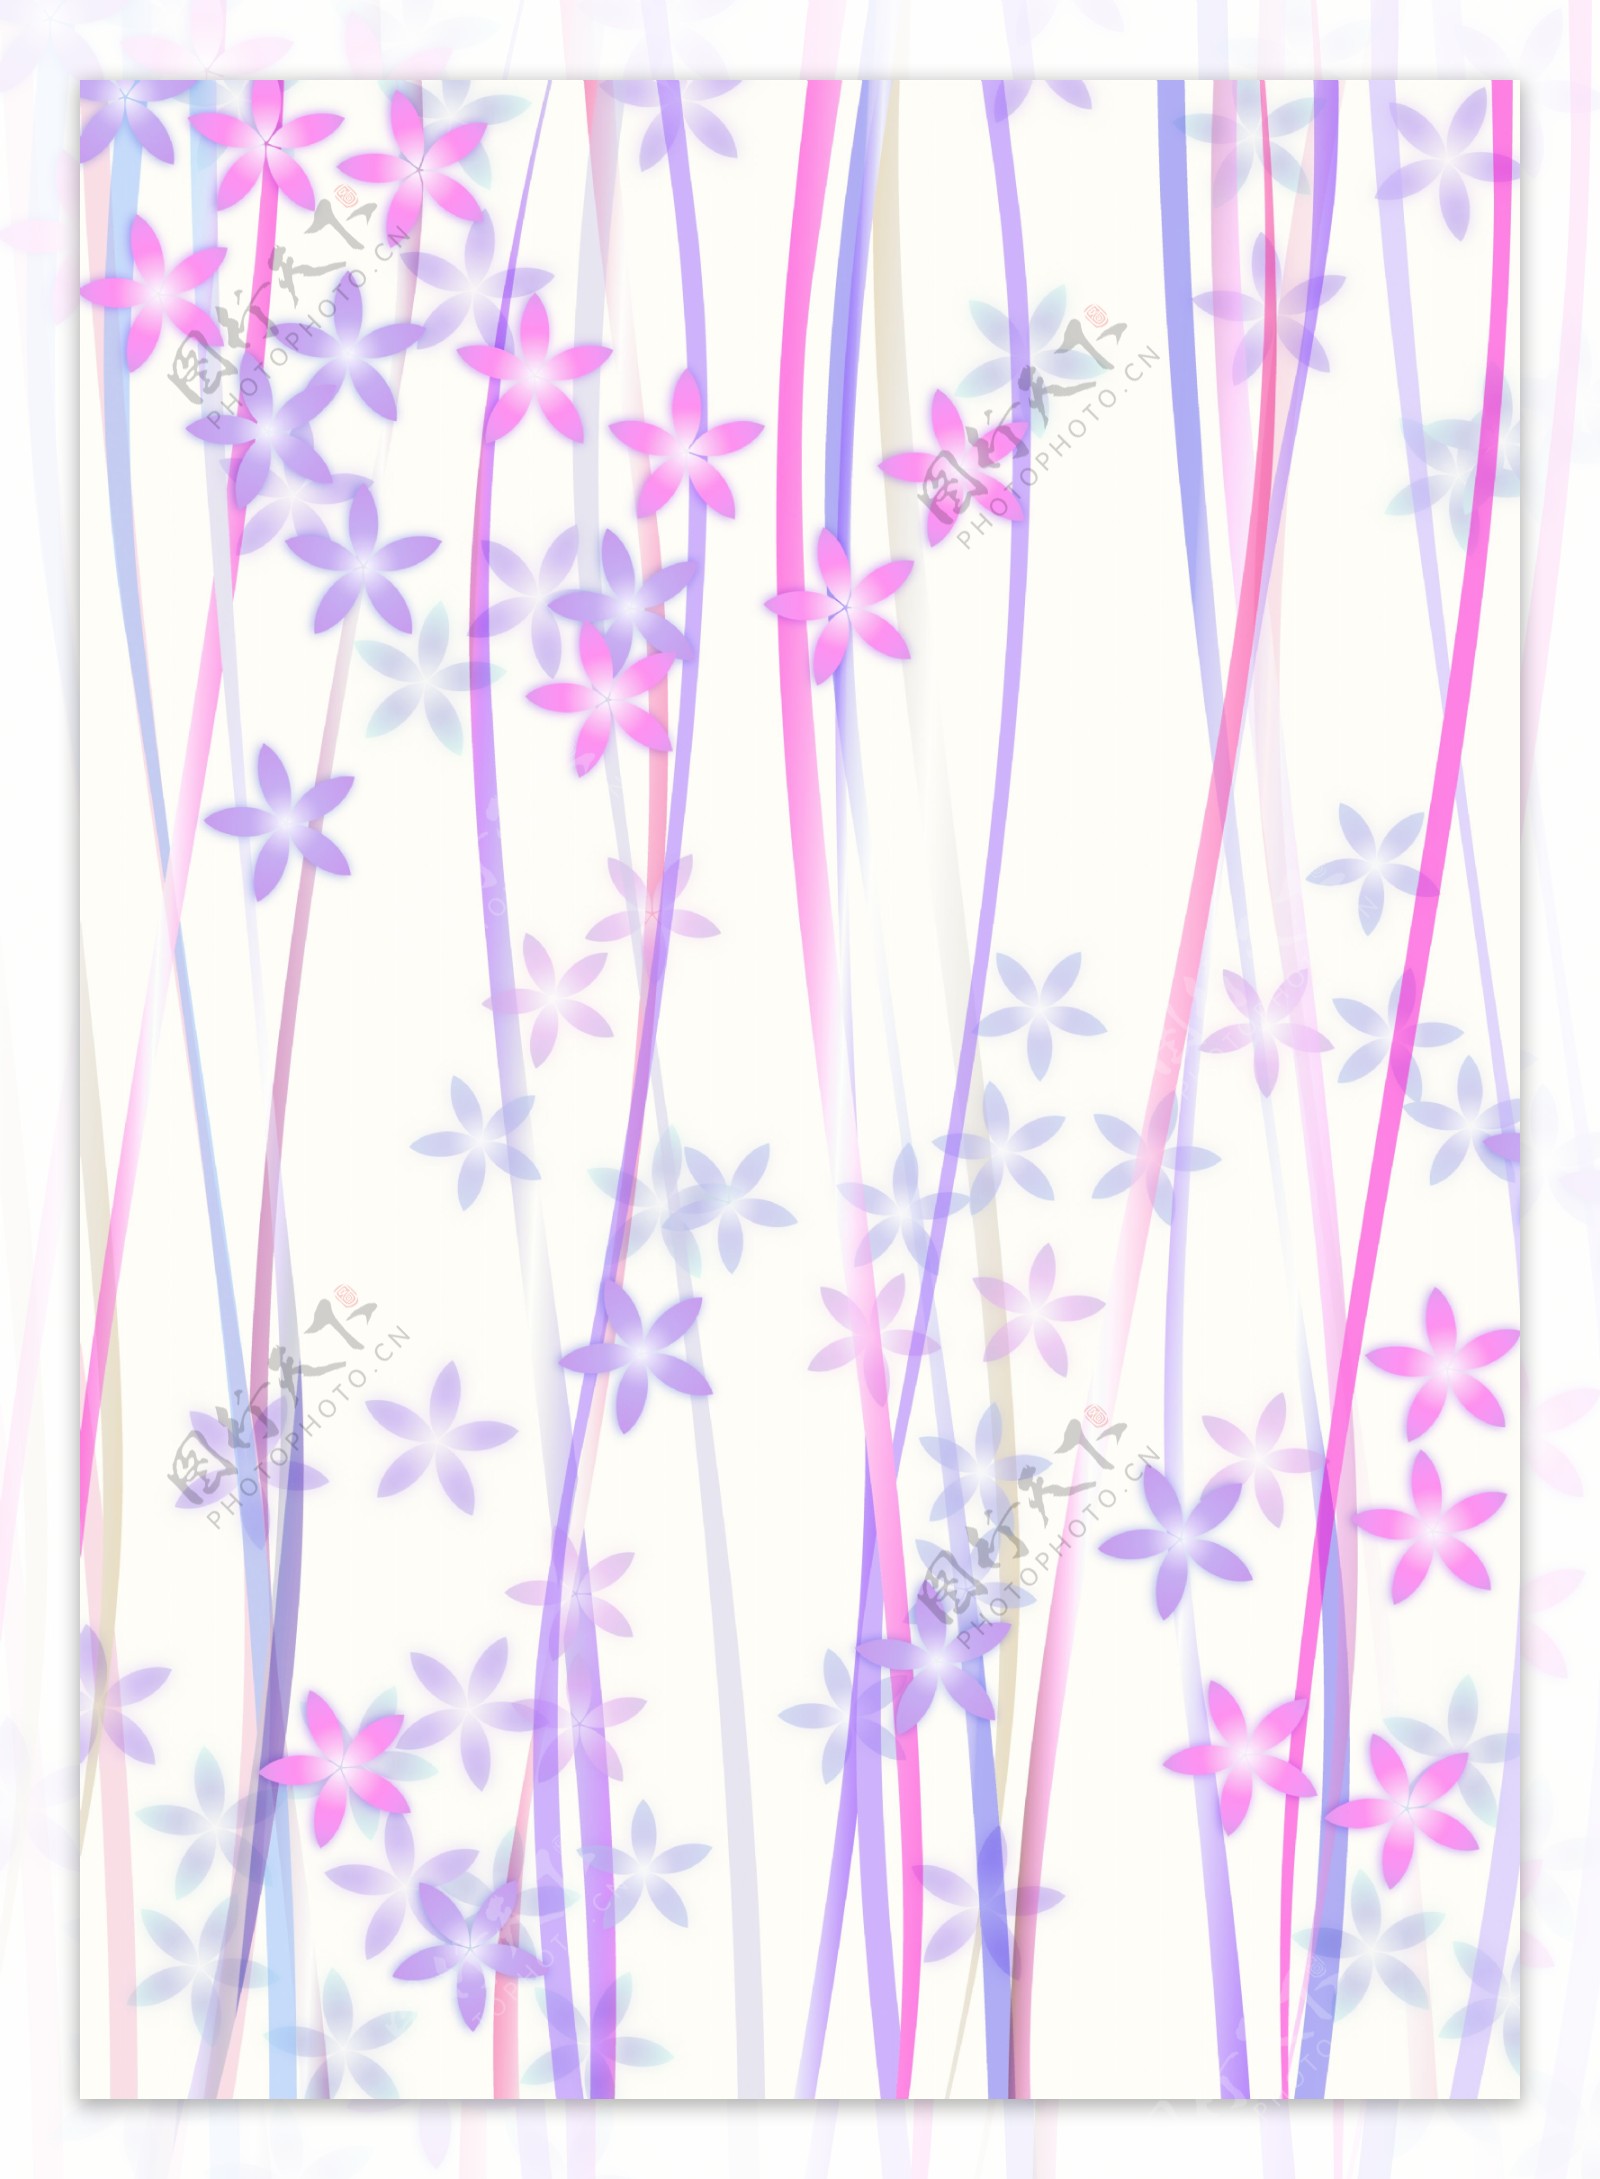 蓝紫线条坠饰五角花瓣背景图